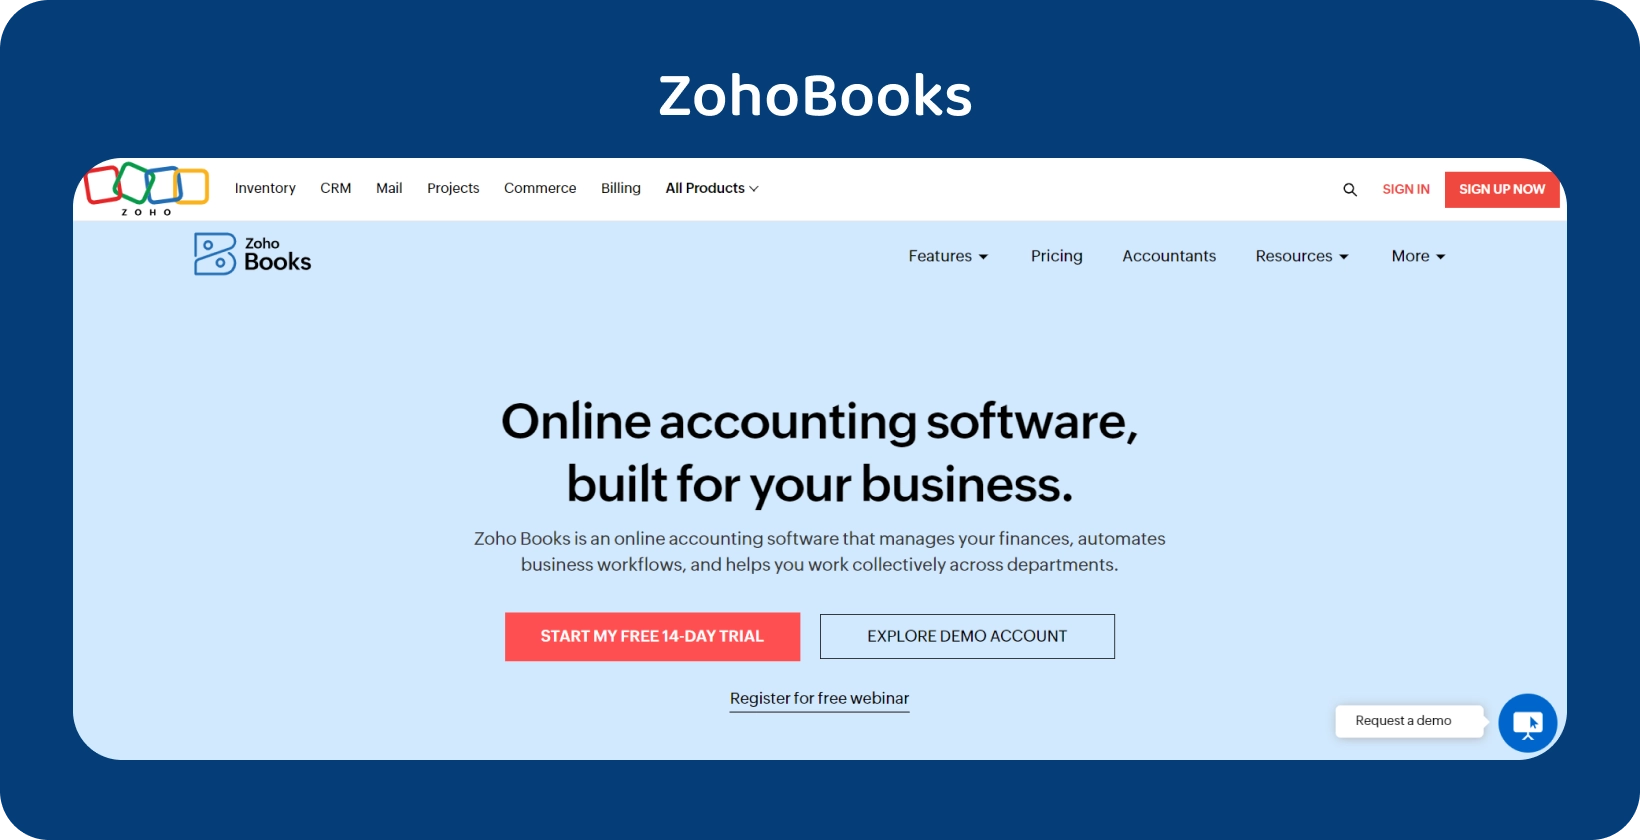 Zoho Books ana sayfa başlığı, kolaylaştırılmış operasyonlar için işletmeye özel çevrimiçi muhasebe yazılımını vurgular